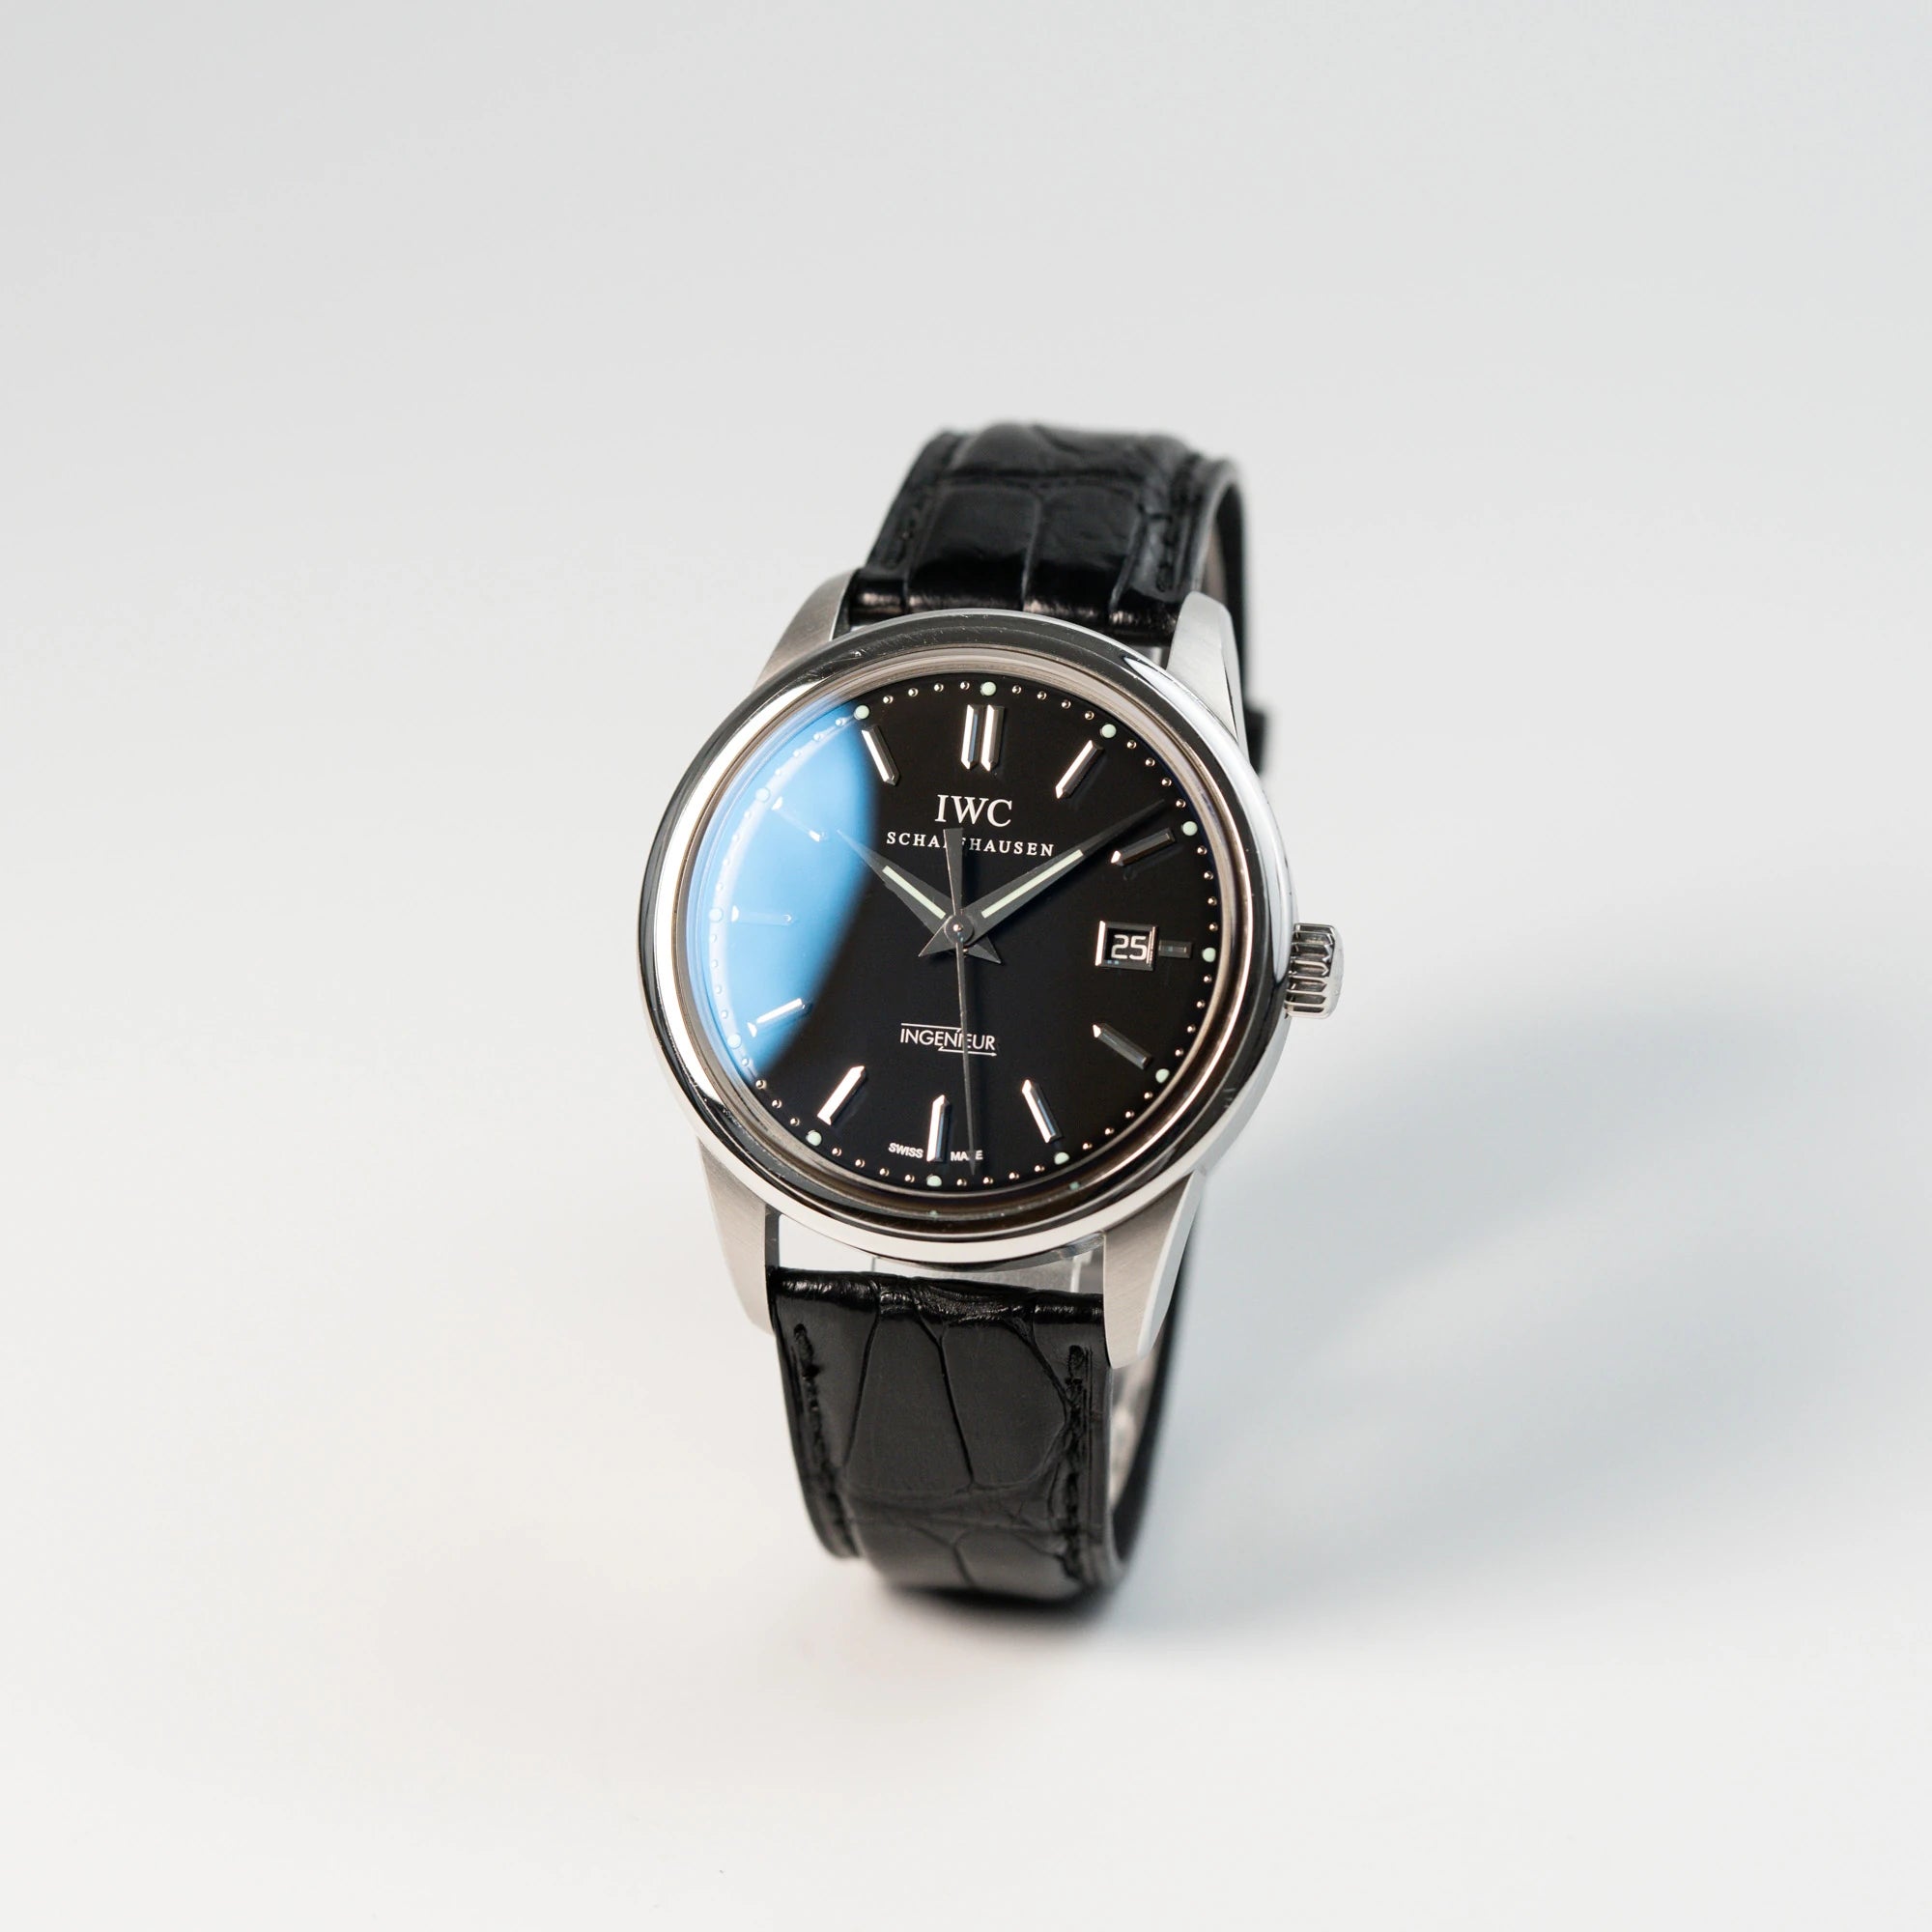 Leicht schräge Ansicht der IWC Schaffhausen Uhr "Ingenieur" mit der Referenz IW323301 mit schwarzem Zifferblatt